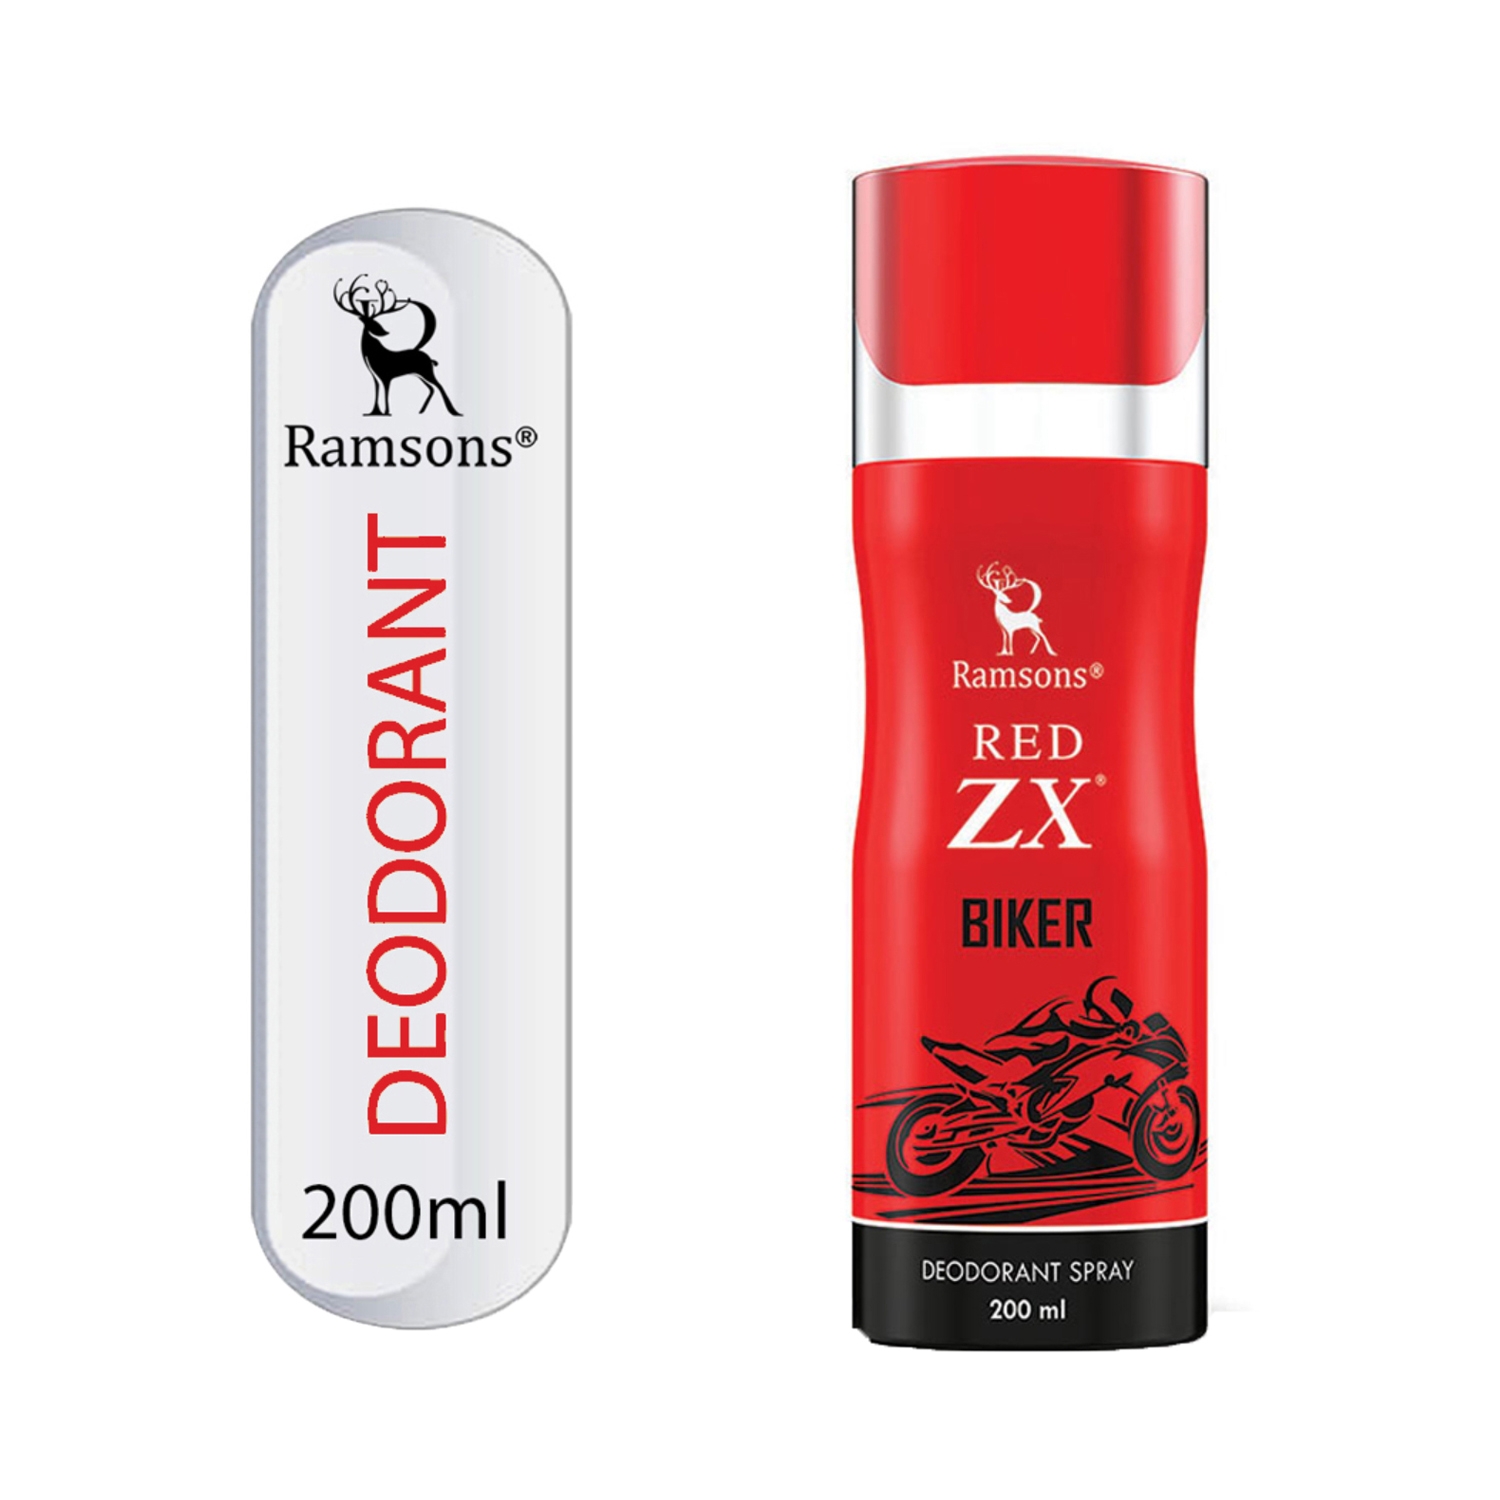 Ramsons Red Zx Biker Deodorant (200ml)